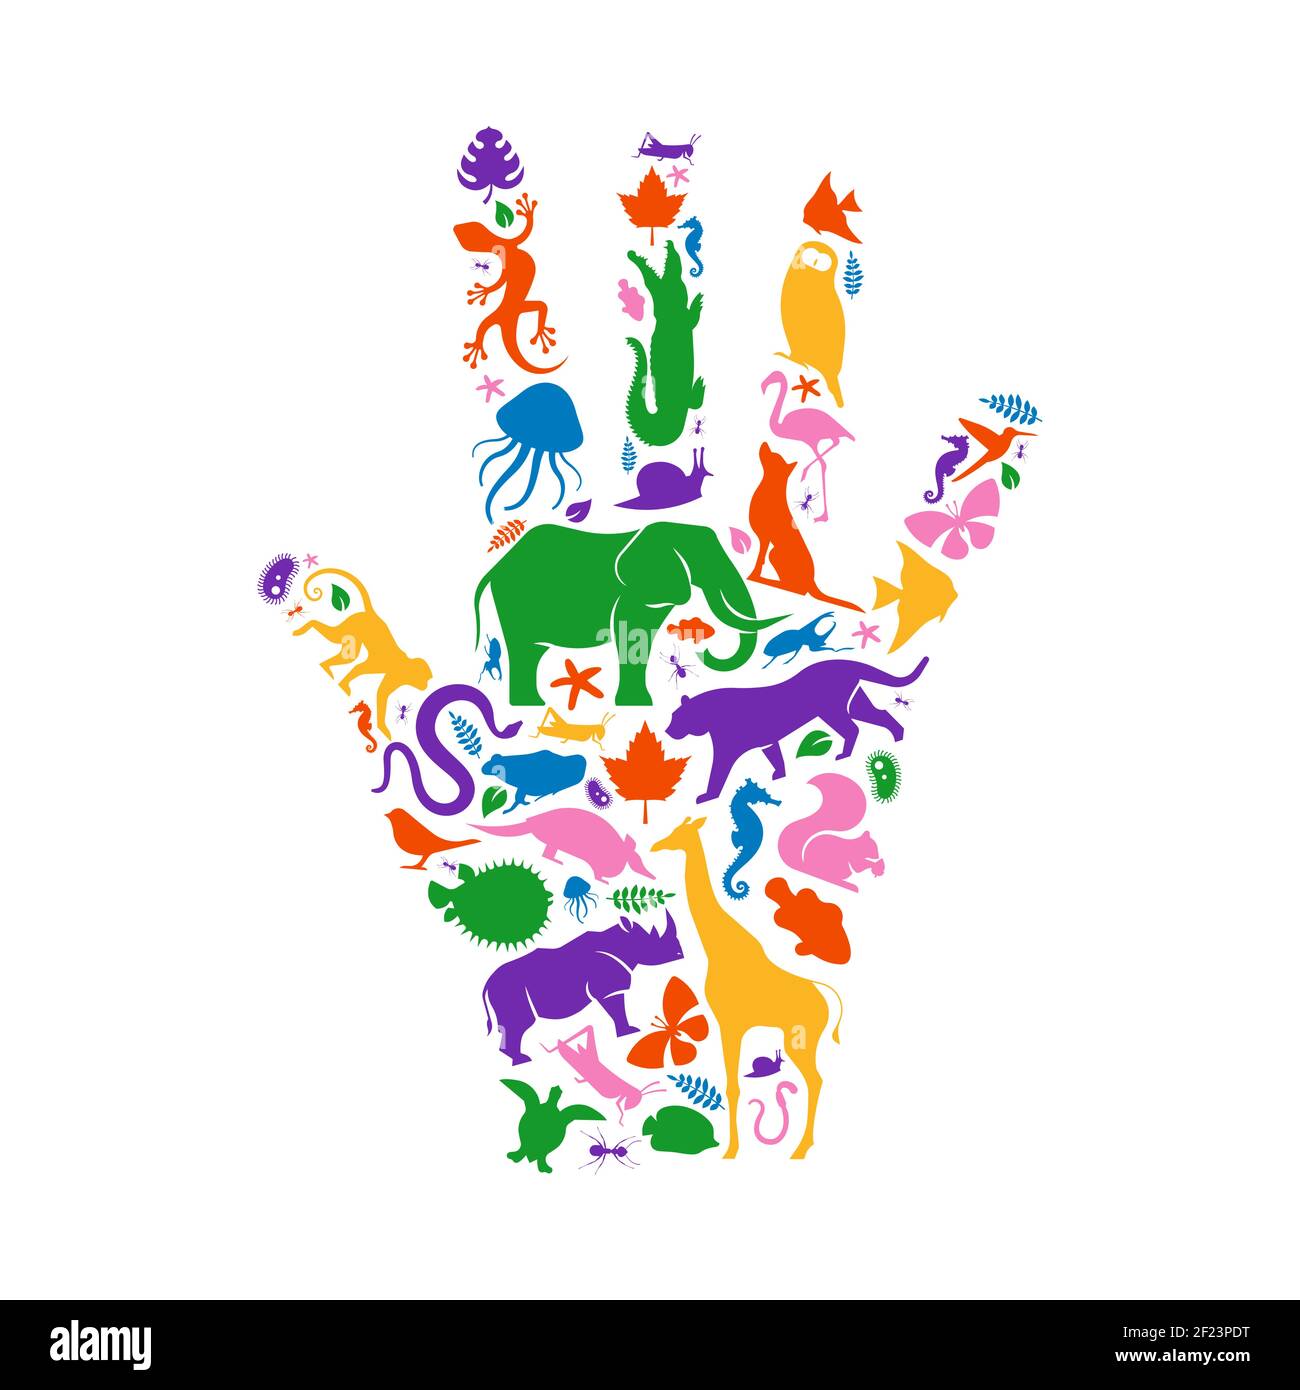 Verschiedene Tierformen machen menschliche Hand Form auf isolierten weißen Hintergrund. Bunte Tiere Silhouette Illustration für wilde Leben Biodiversität concep Stock Vektor